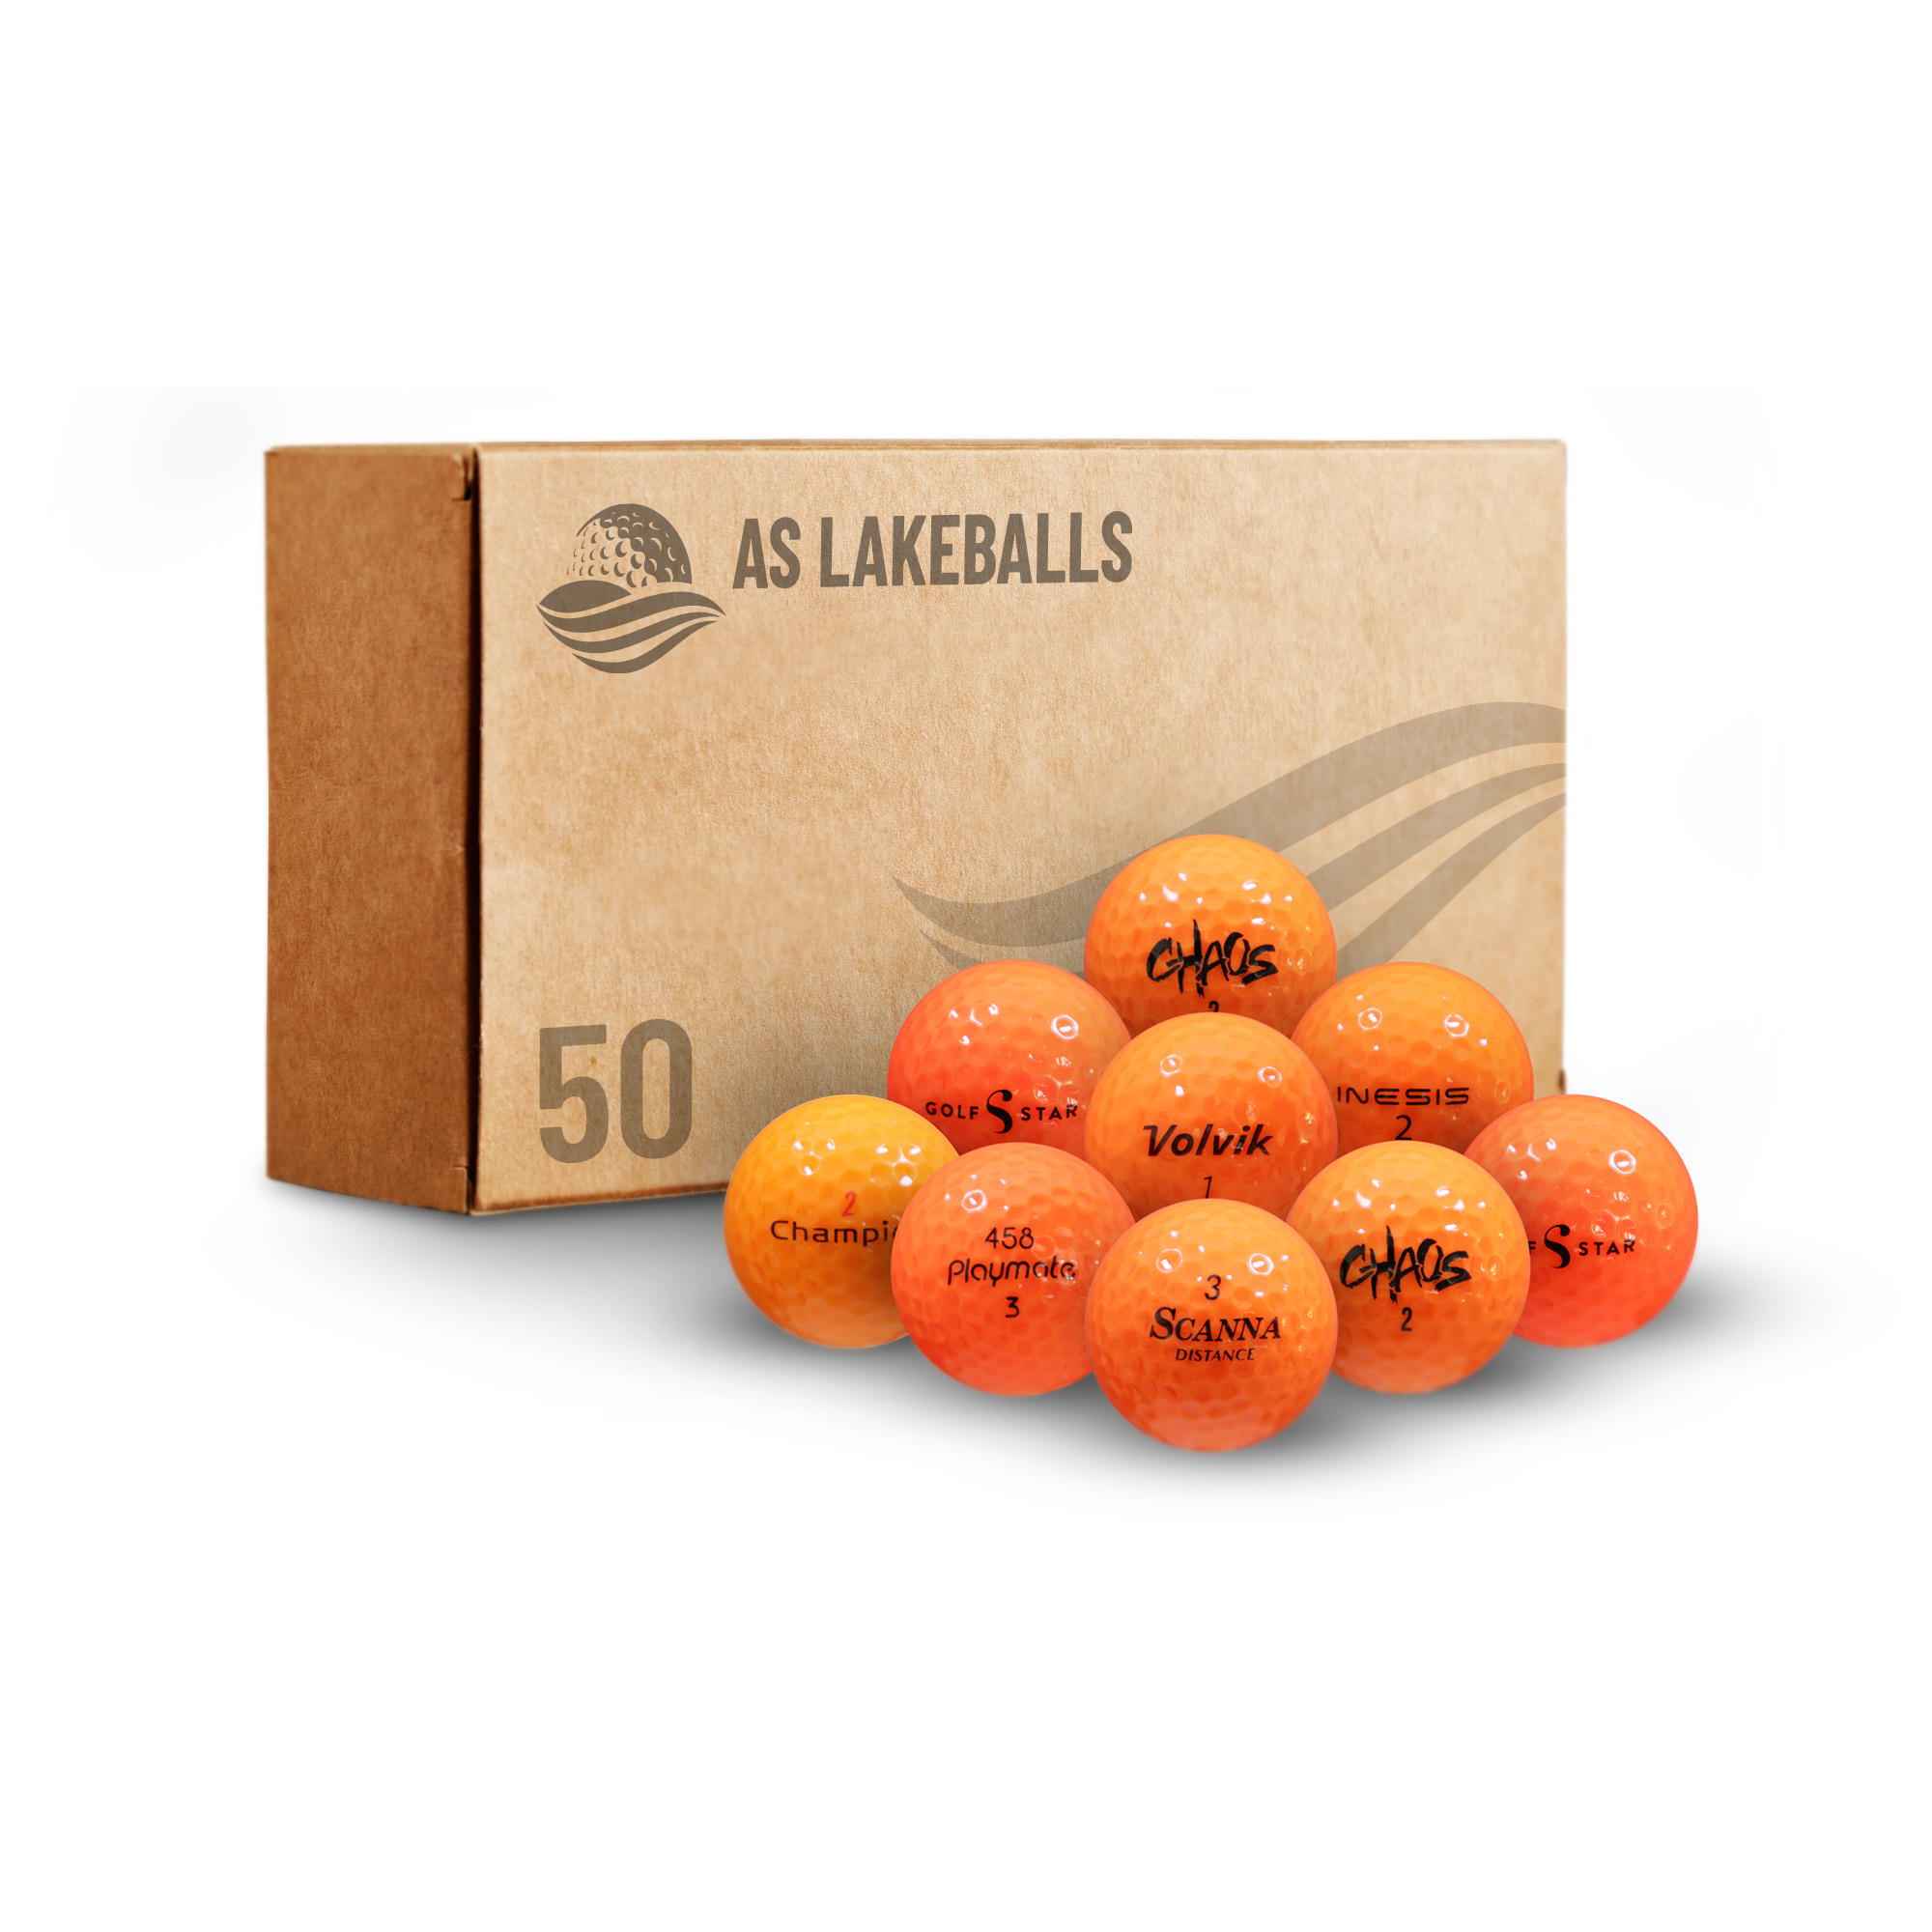 50 Stück leuchtrot/orange Mix AA-AAA Lakeballs bei AS Lakeballs günstig kaufen